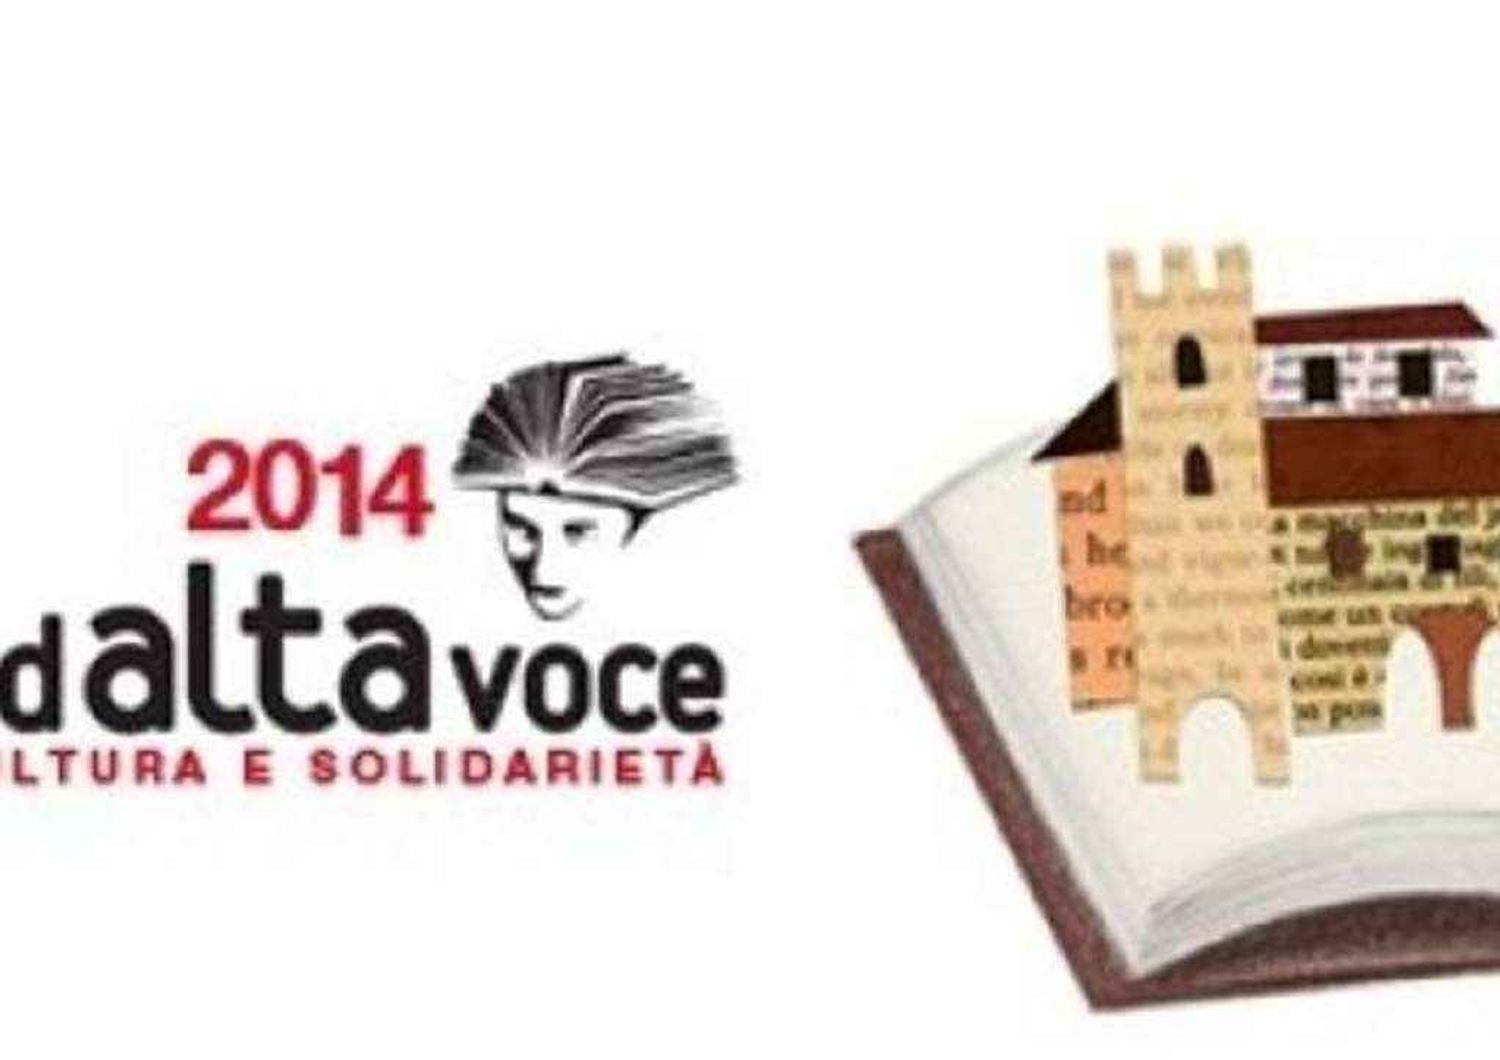 A Venezia e Bologna 'Ad alta voce' letture in diretta su web